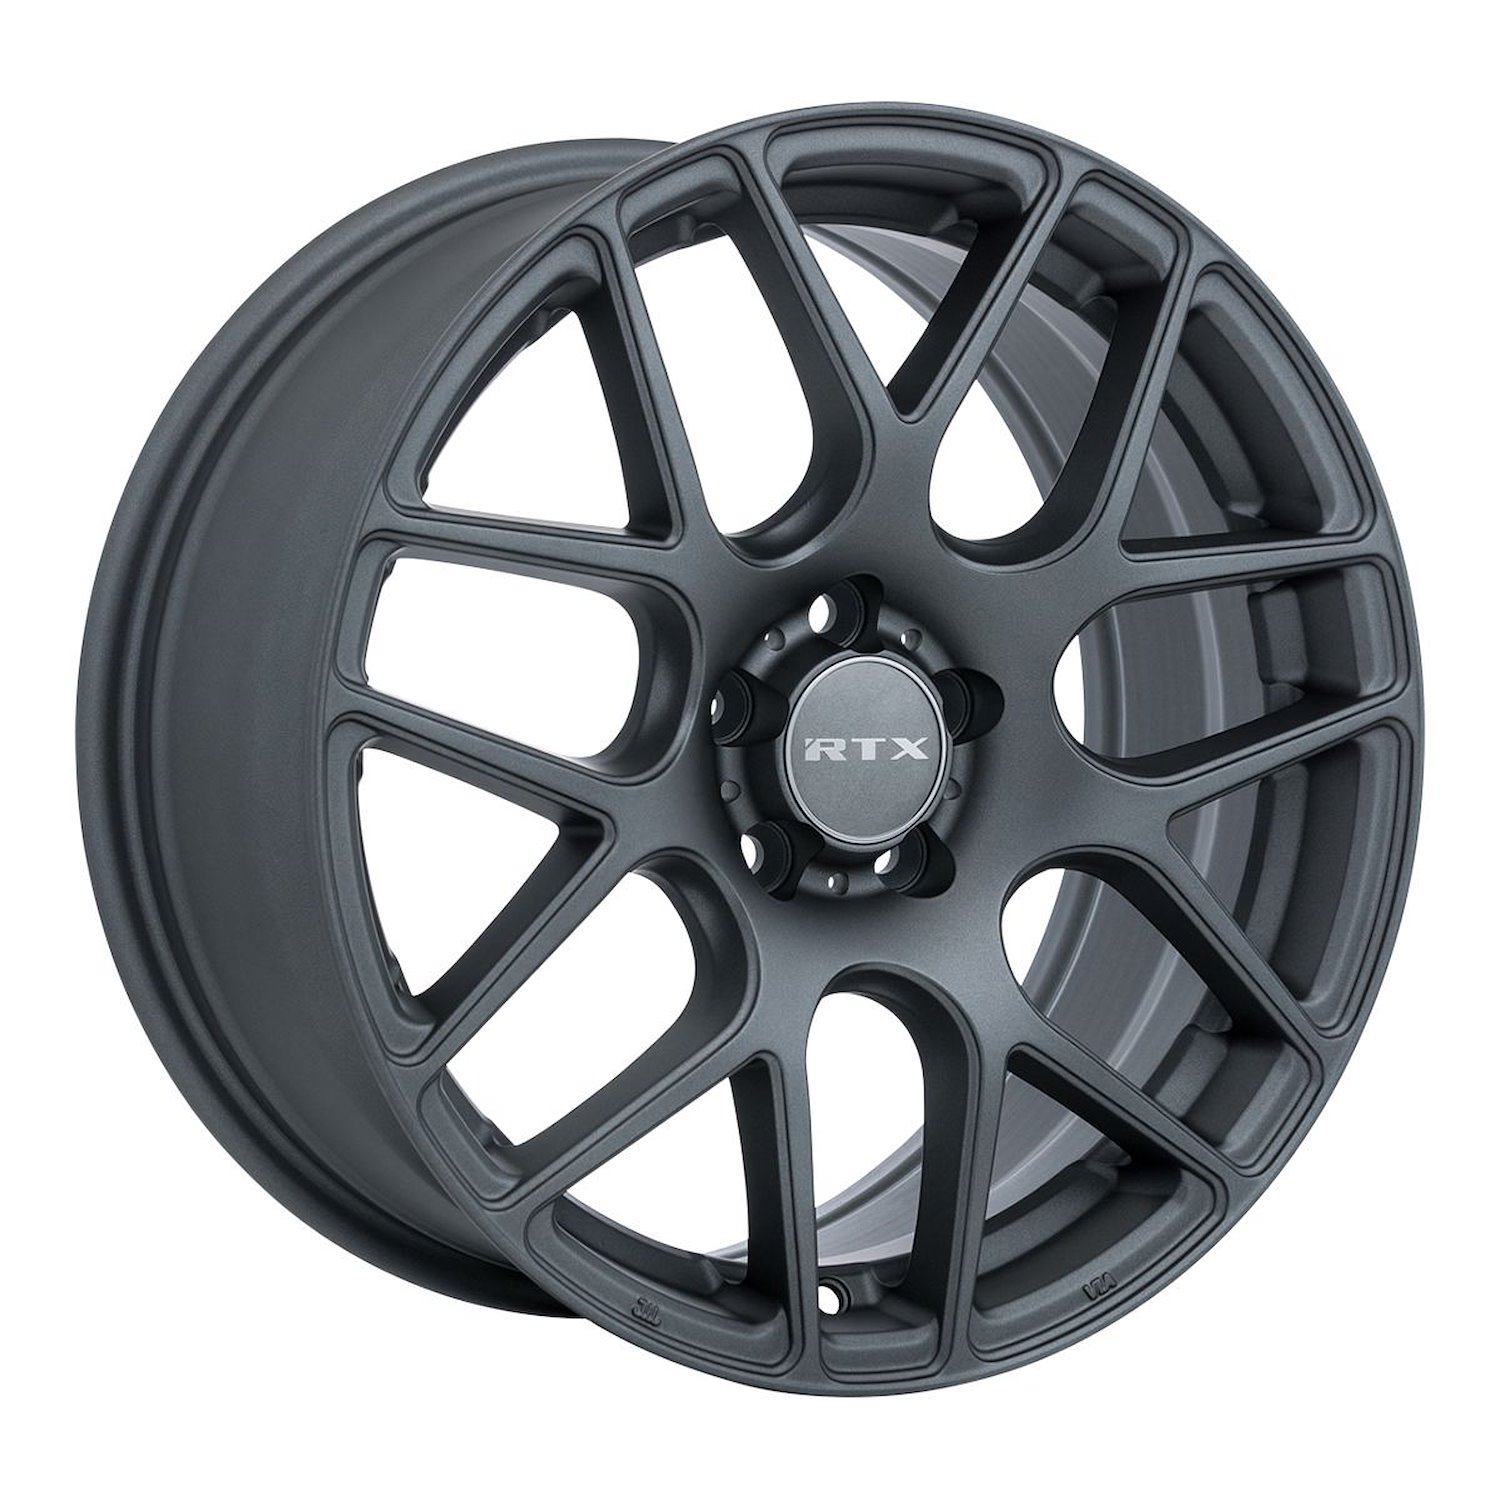 082781 RTX-Series Envy Wheel [Size: 17" x 7.50"] Matte Gunmetal Finish